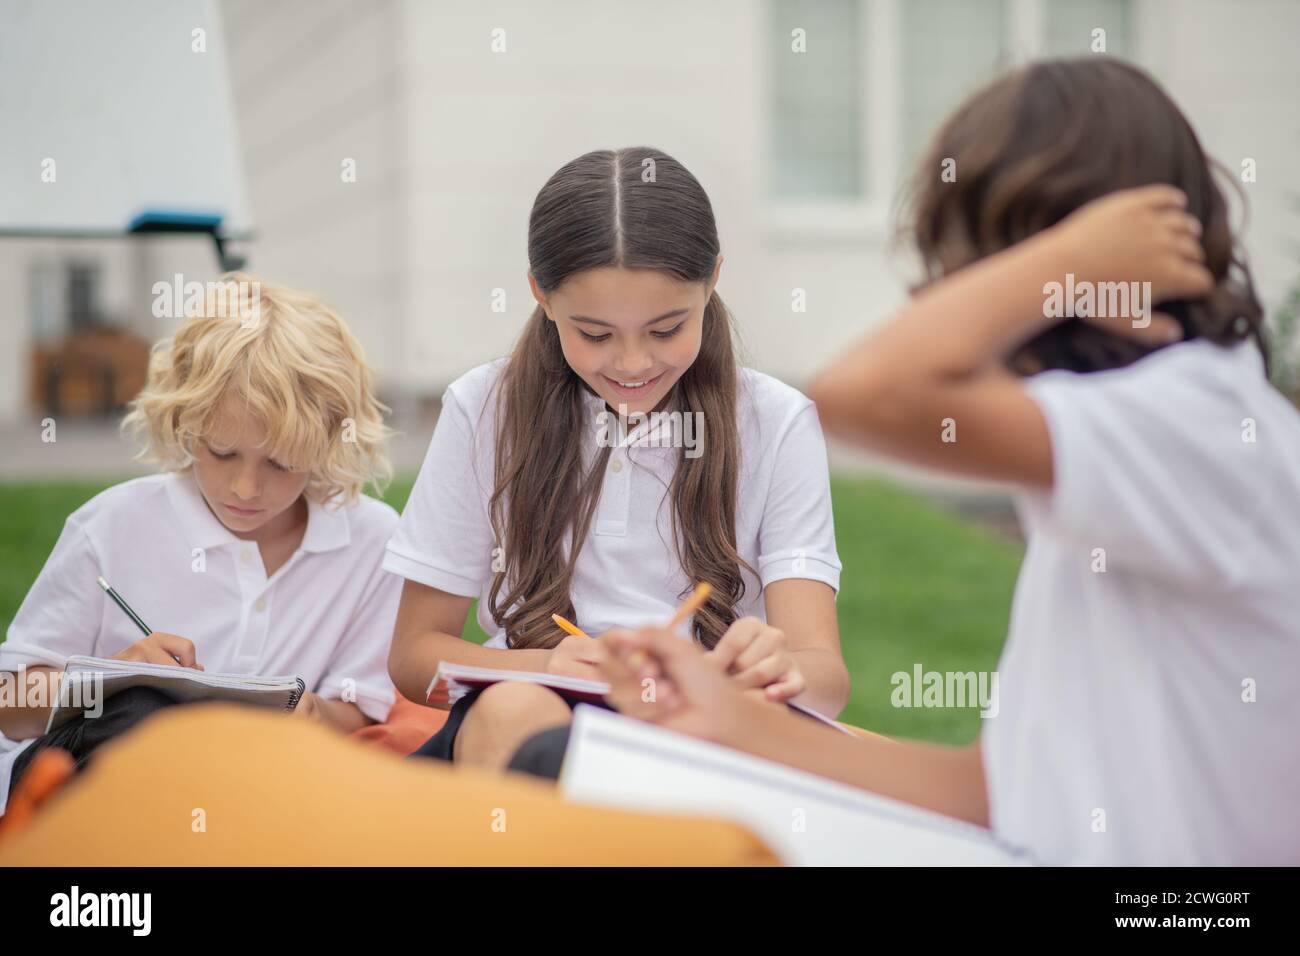 Kinder in weißen Hemden sitzen und studieren zusammen Stockfoto